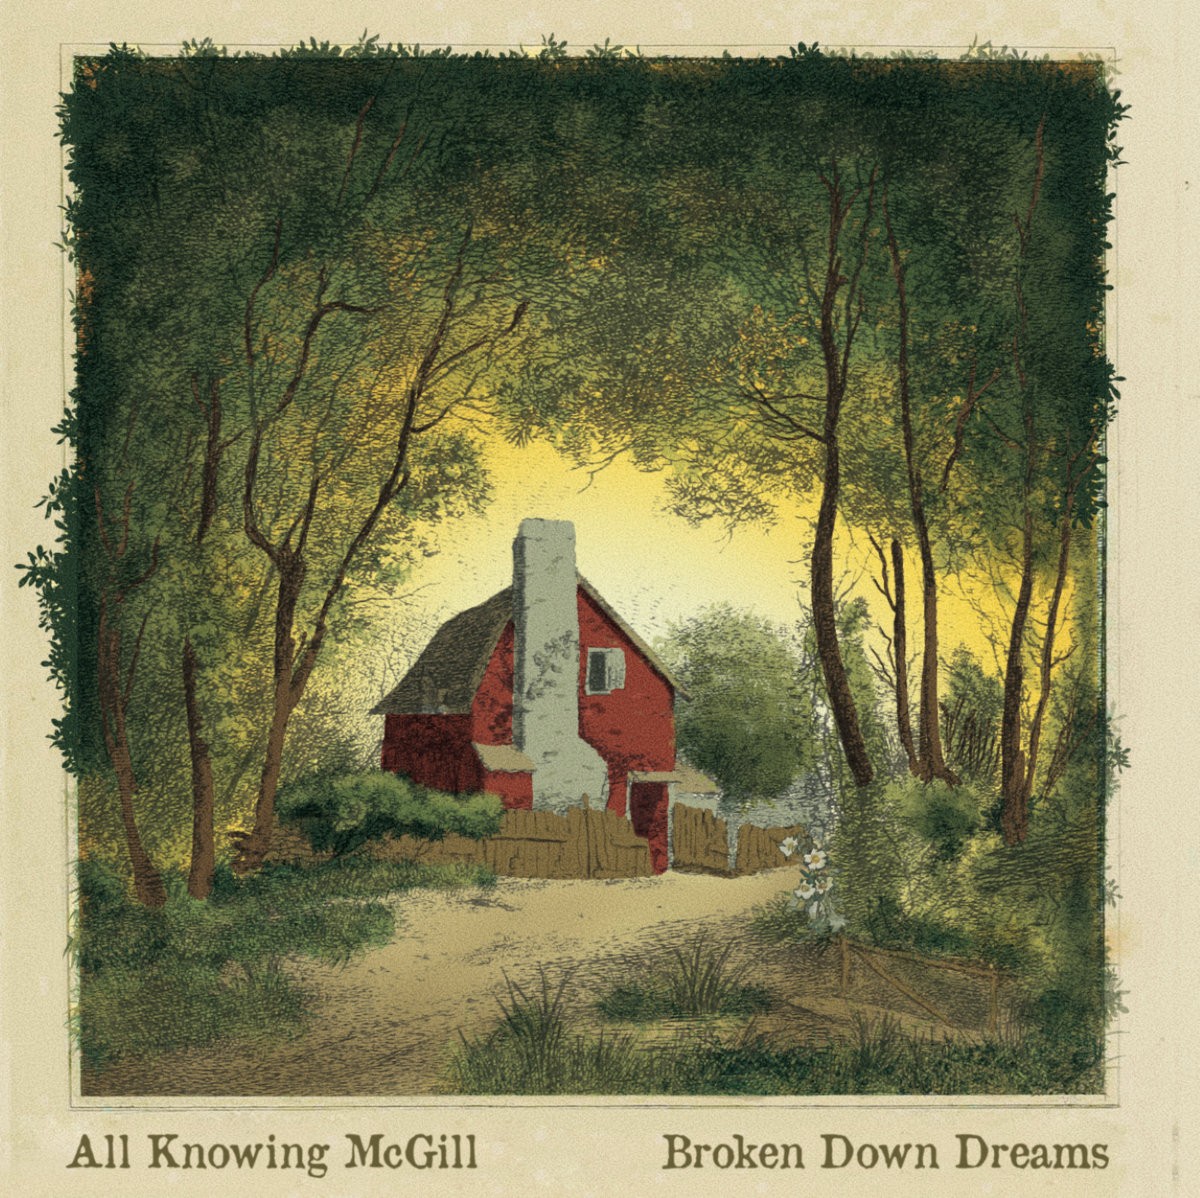 All Knowing McGill - Broken Down Dreams